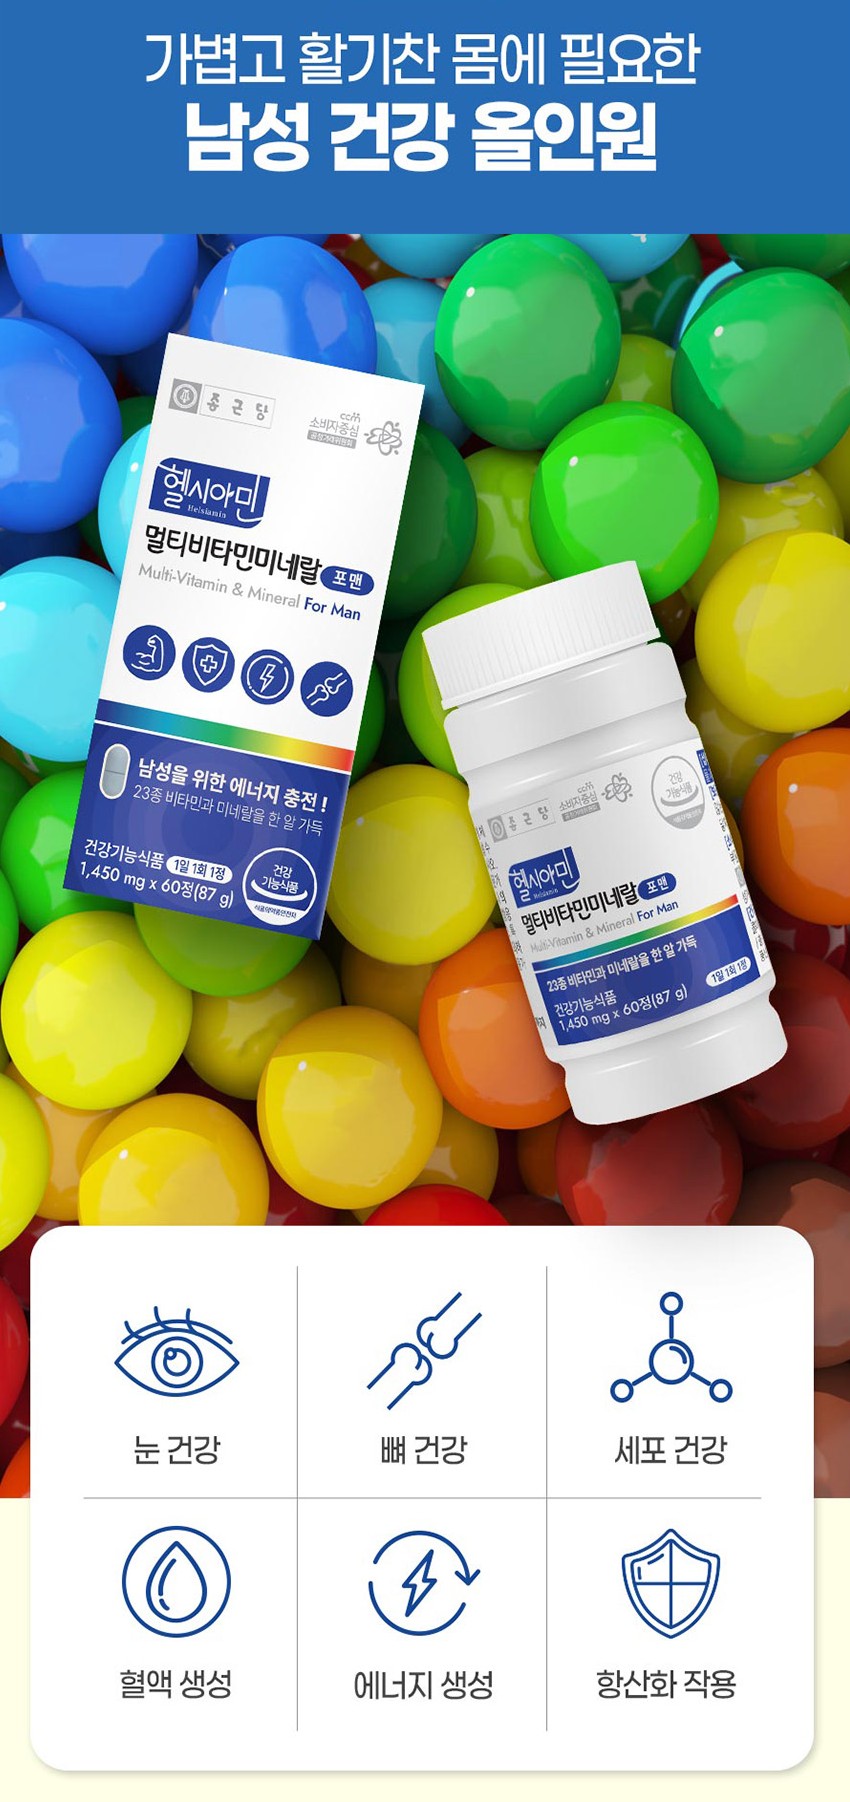 Chong Kun Dang Helsiamin Multi-Vitamin For Man Tablets Mineral Eyes